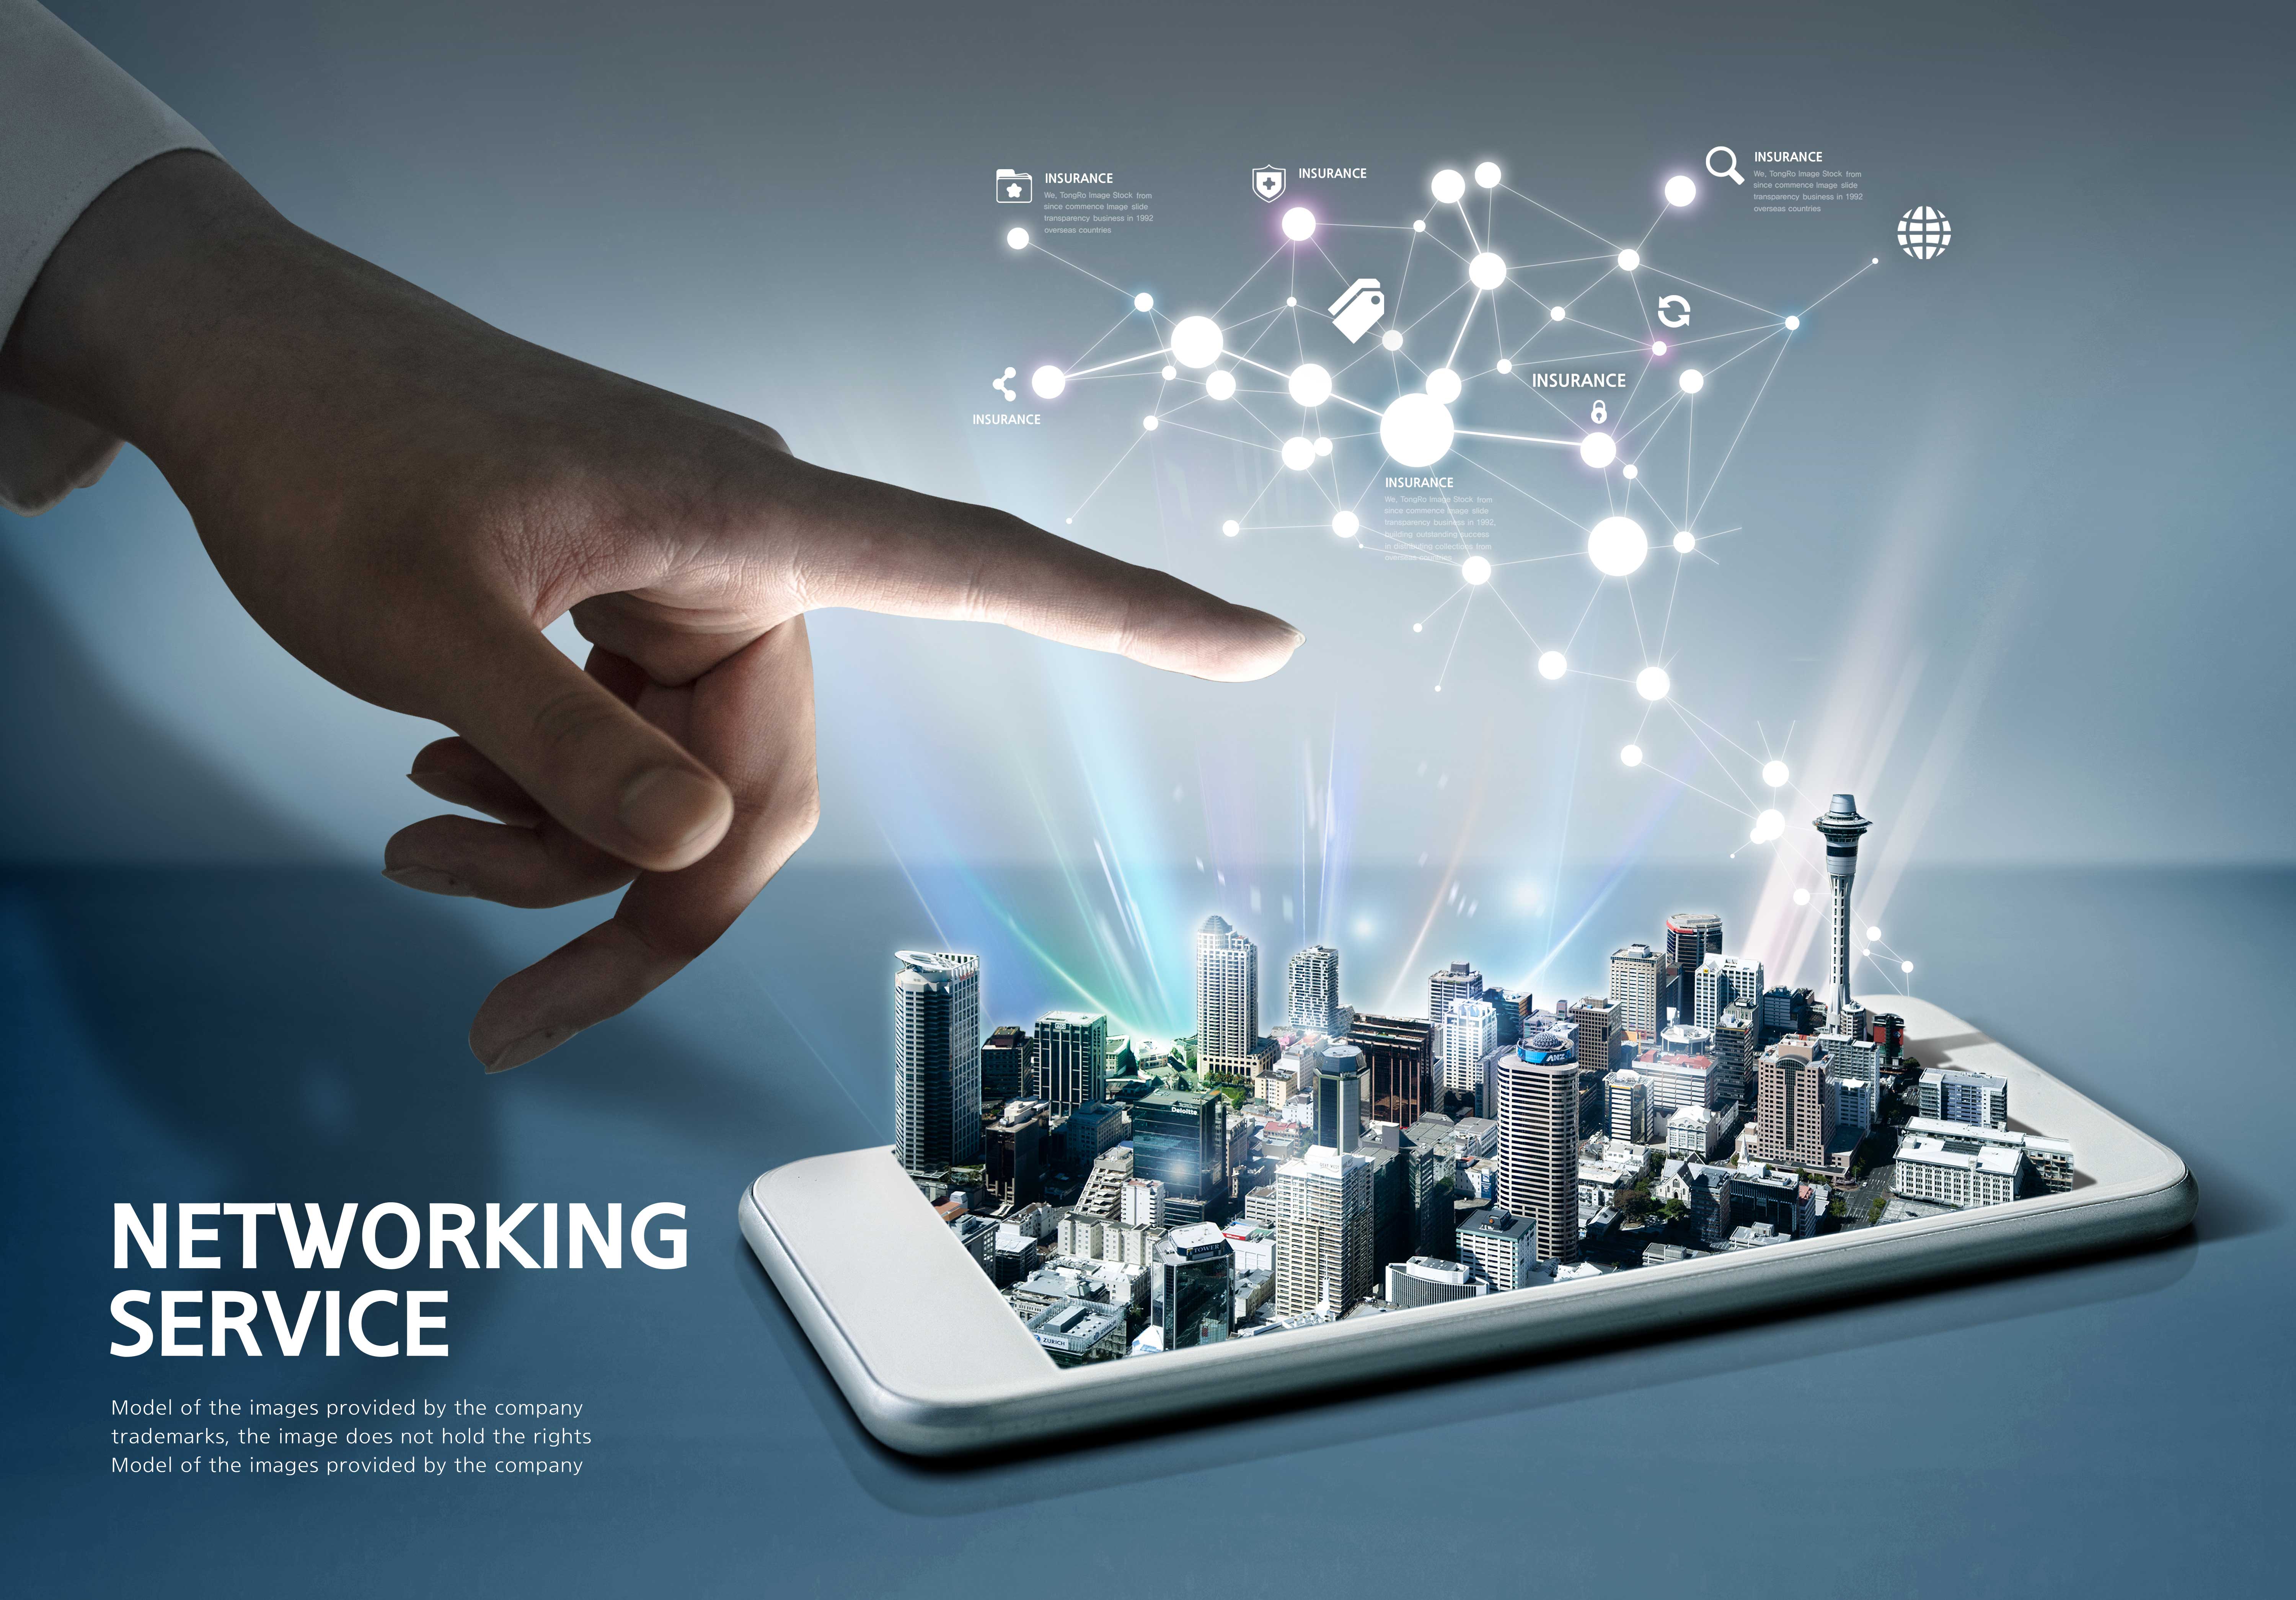 城市科技网络服务主题图形psd素材设计素材模板